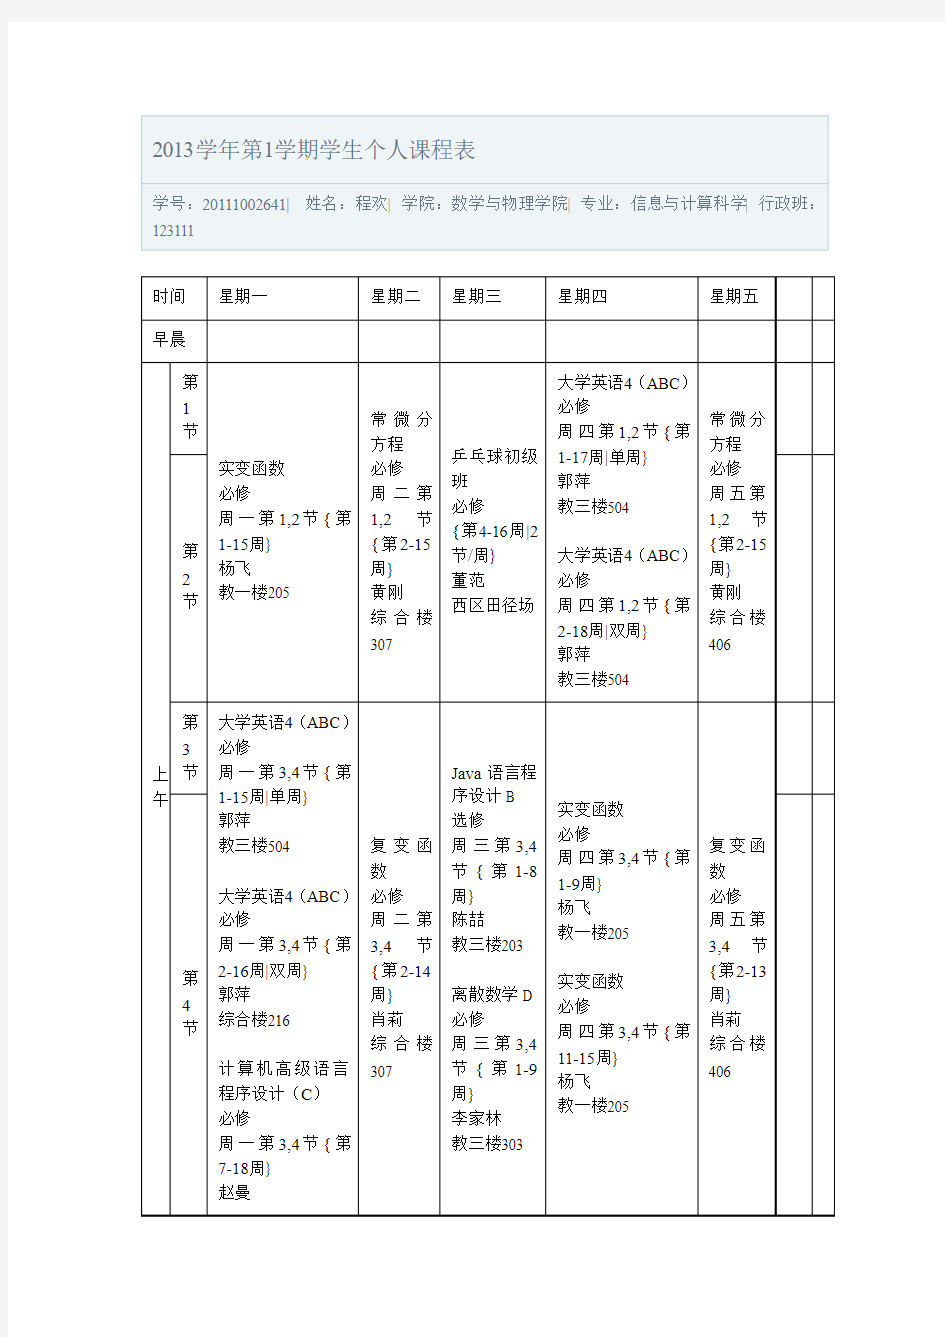 中国地质大学2013学年第1学期学生个人课程表